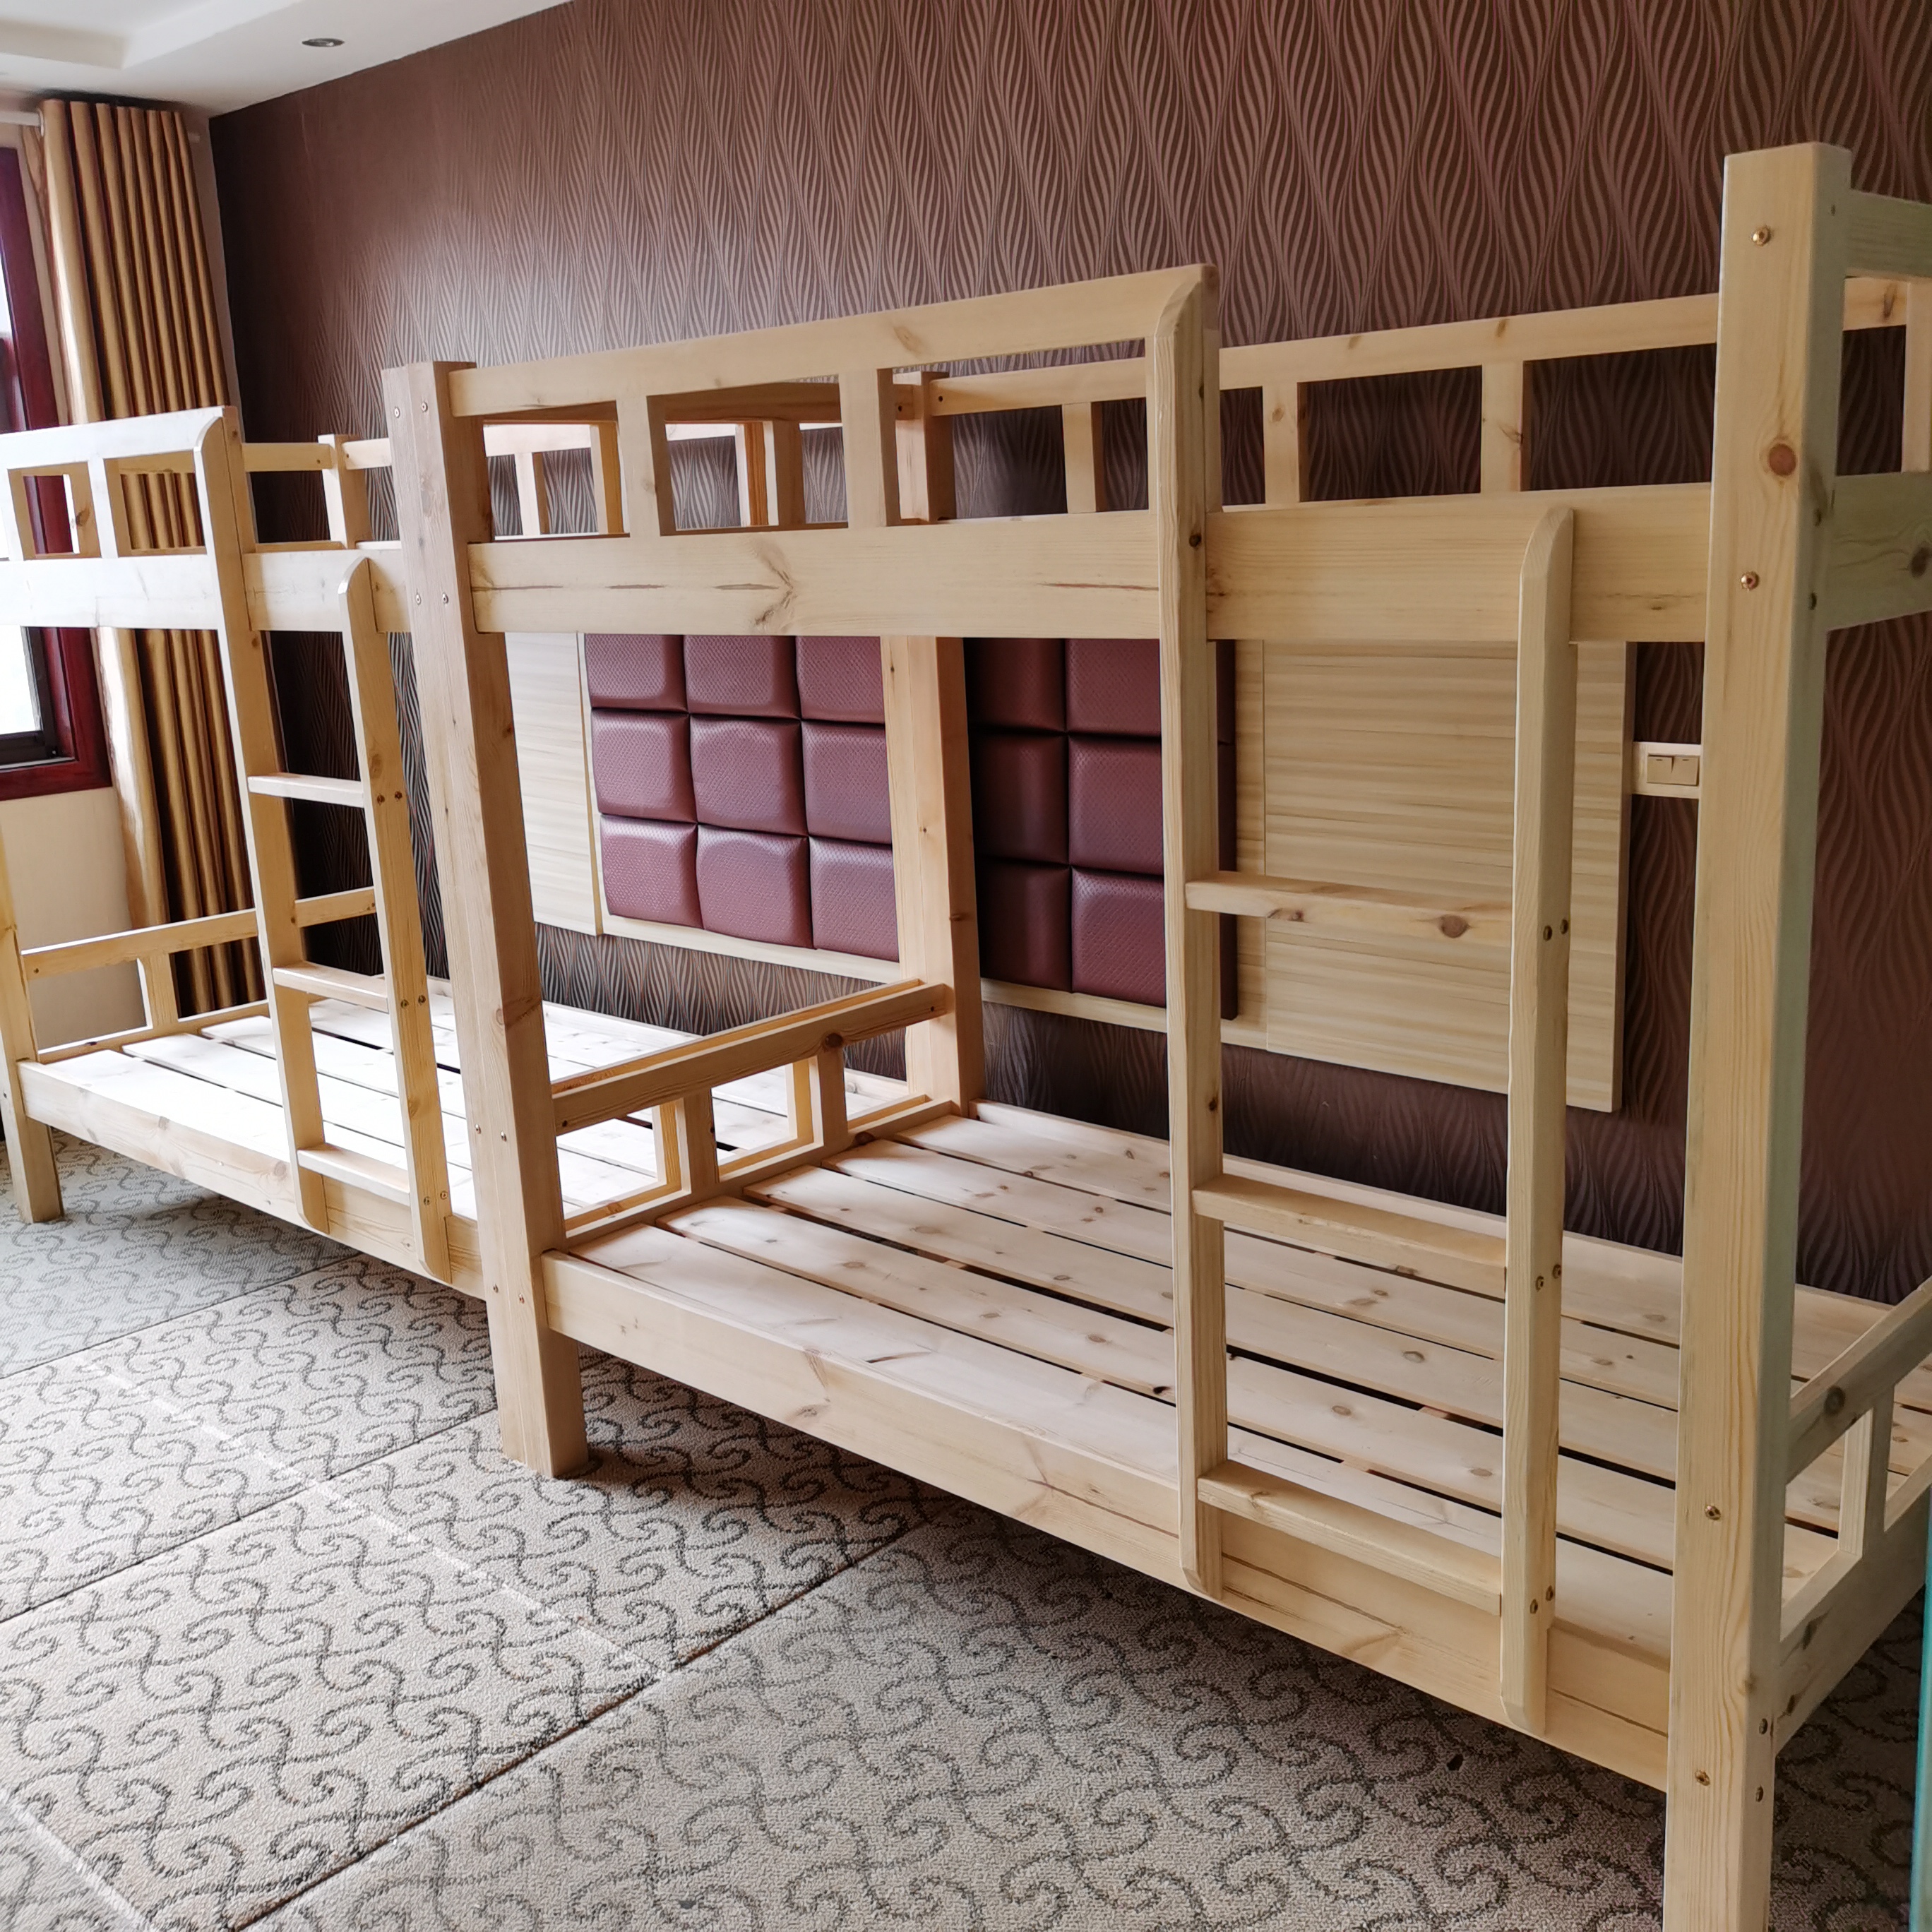 厂家批发 幼儿园双层木床学生宿舍上下木床子母床